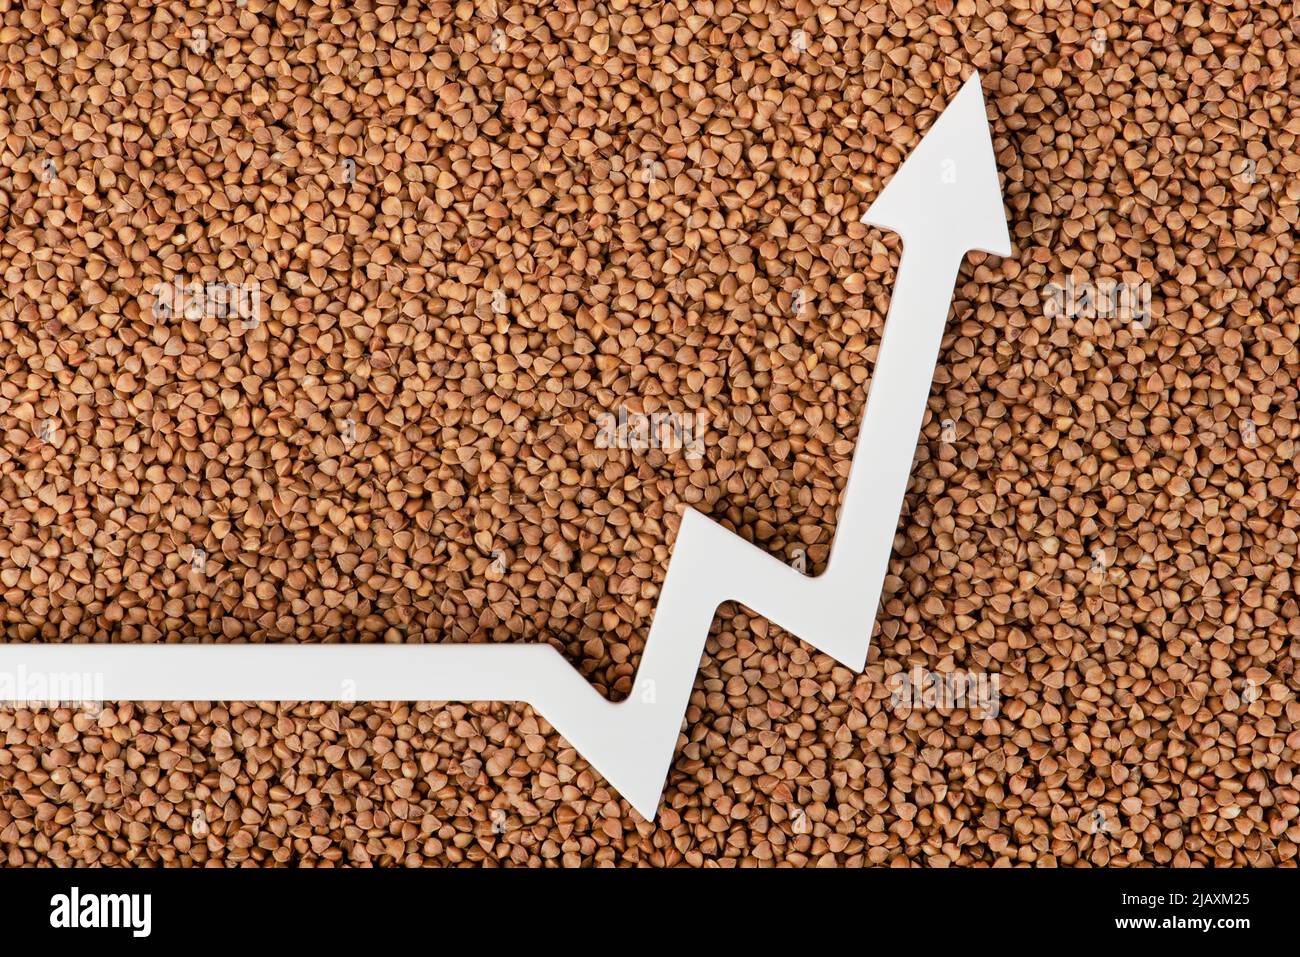 Precios del trigo sarraceno en Europa, precios en aumento para los cultivos. Crisis alimentaria mundial. El gráfico apunta hacia arriba. Mercado financiero europeo. Foto de stock